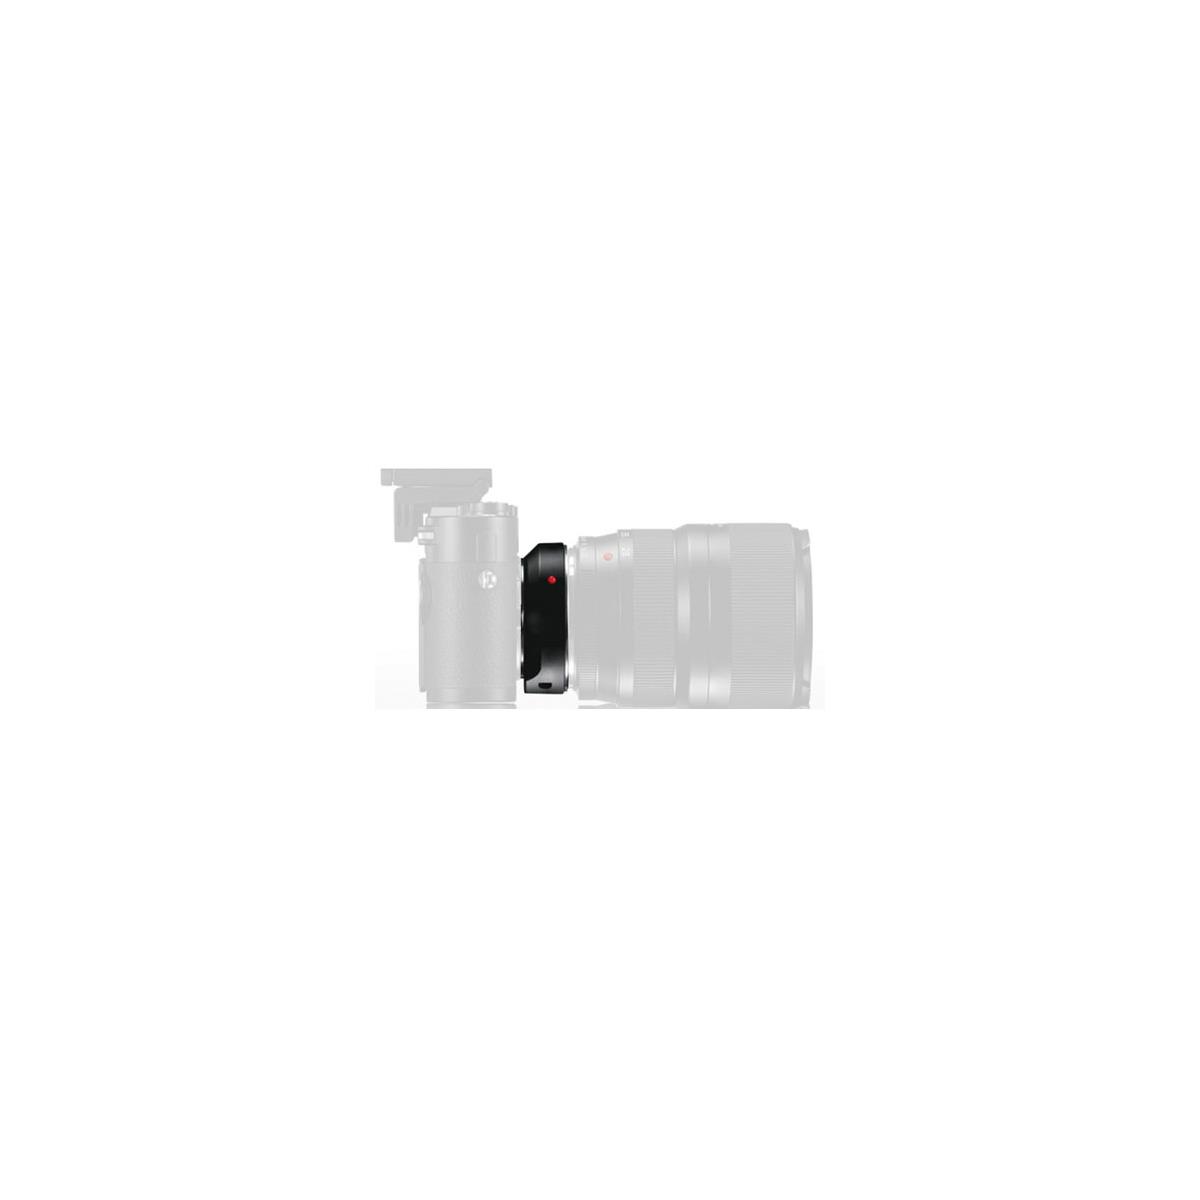 Image of Leica R Adapter M for Digital Full Frame for Leica R Lenses on Leica M